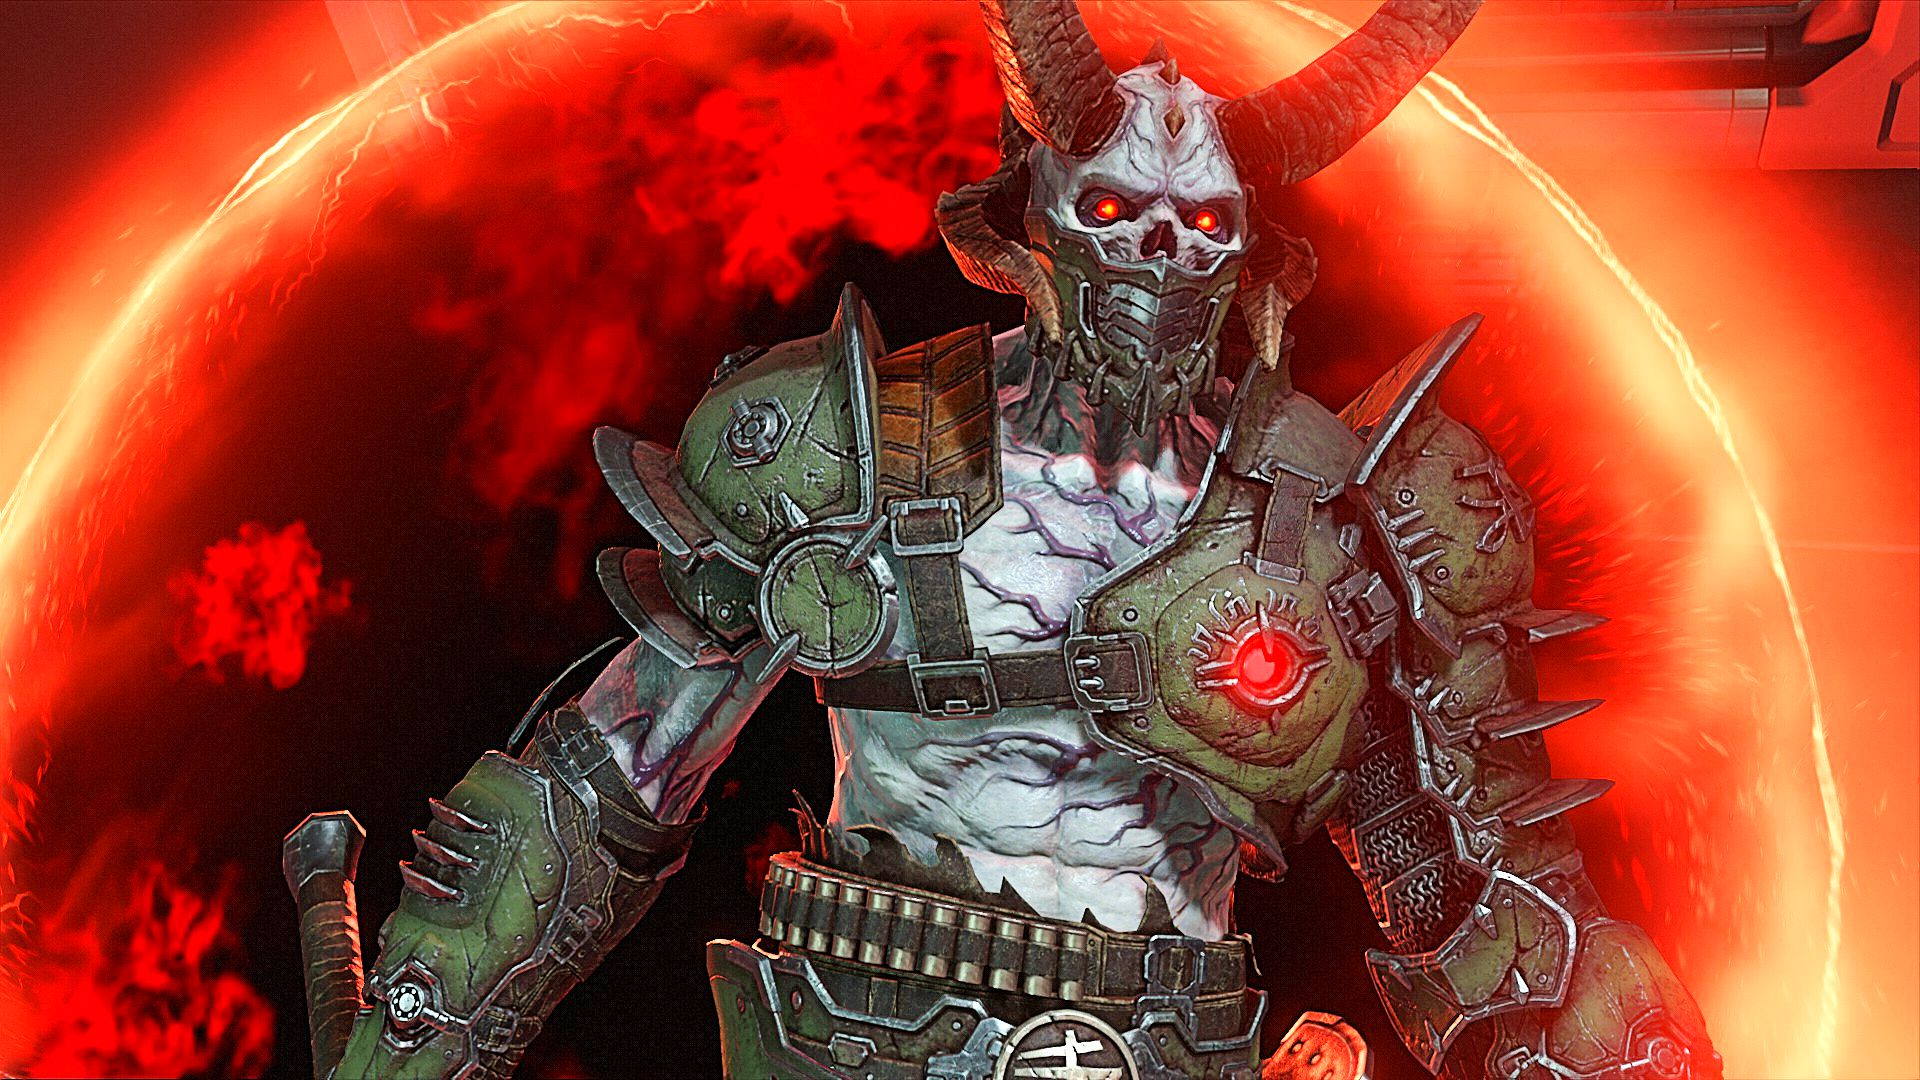 Best FPS Games: A demon in front of a fiery portal in Doom Eternal